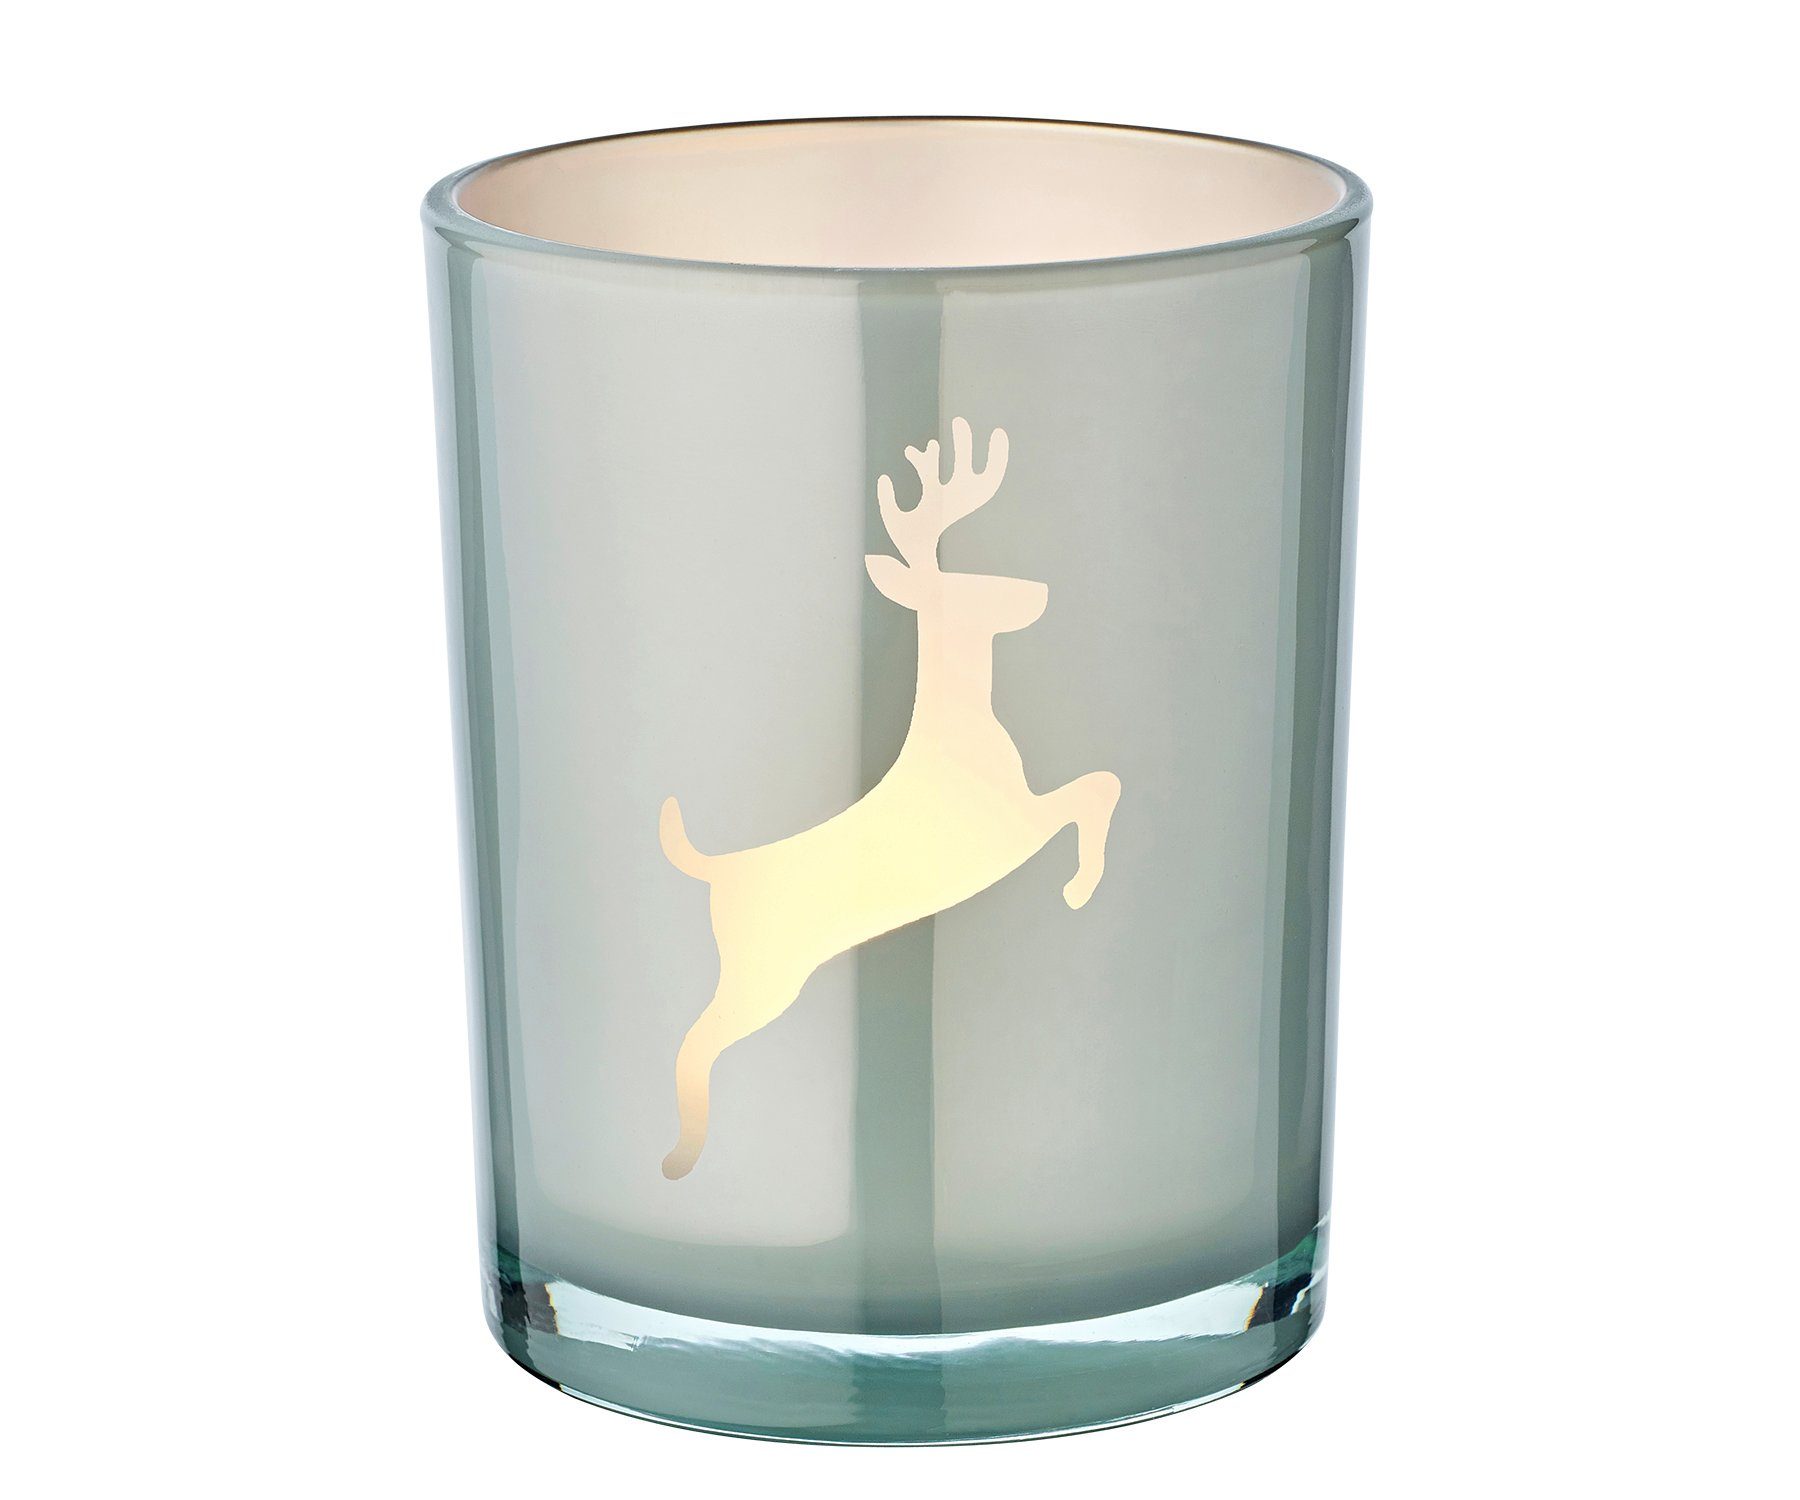 EDZARD Windlicht Loki right, Windlicht, Kerzenglas mit Rentier-Motiv in Grau-Weiß, Teelichtglas für Teelichter, Höhe 13 cm, Ø 10 cm